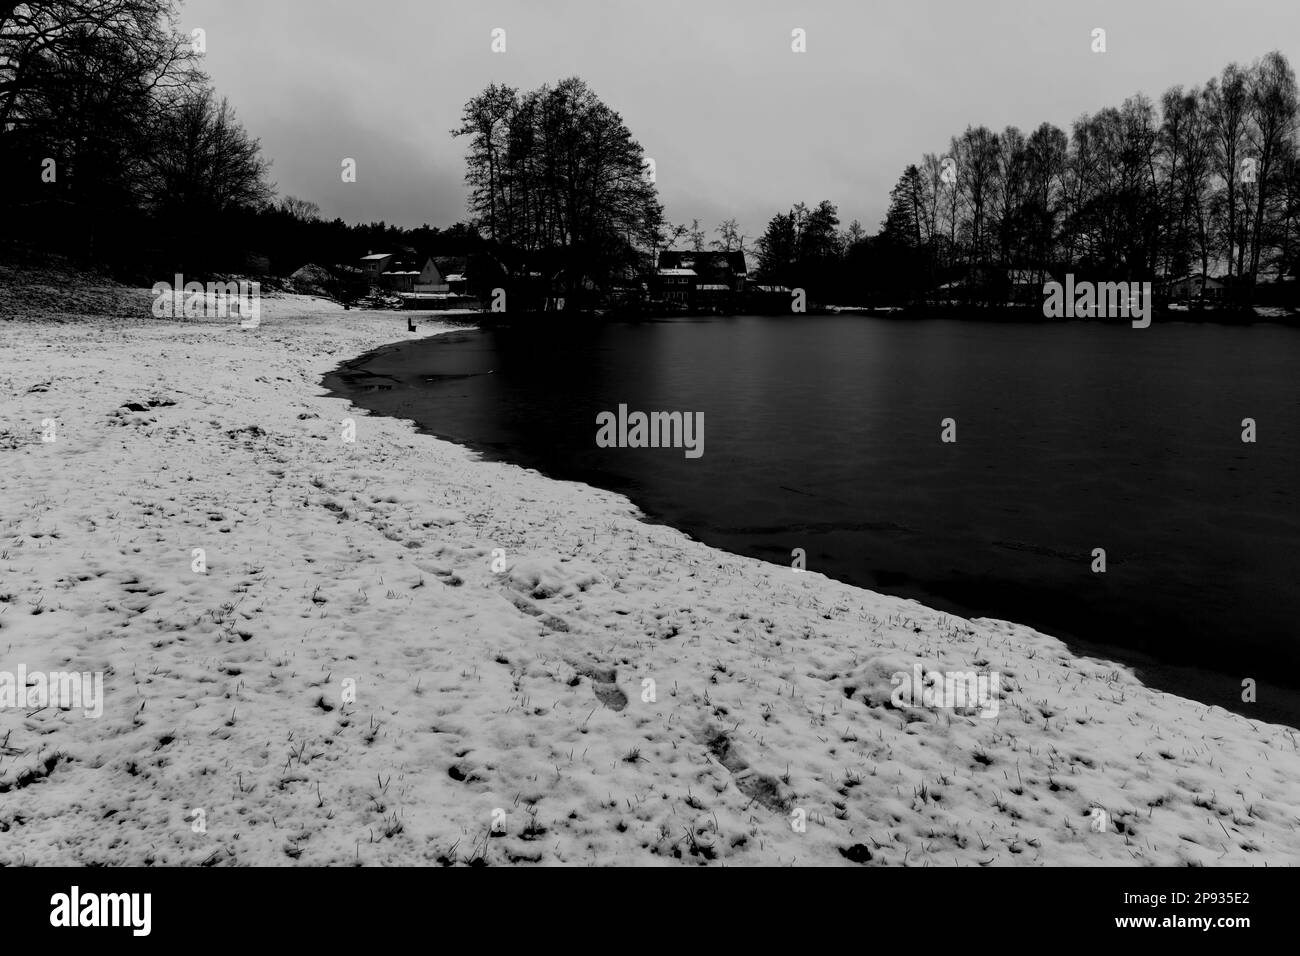 Petit lac de village en hiver, lac gelé, plage enneigée, noir/blanc Banque D'Images